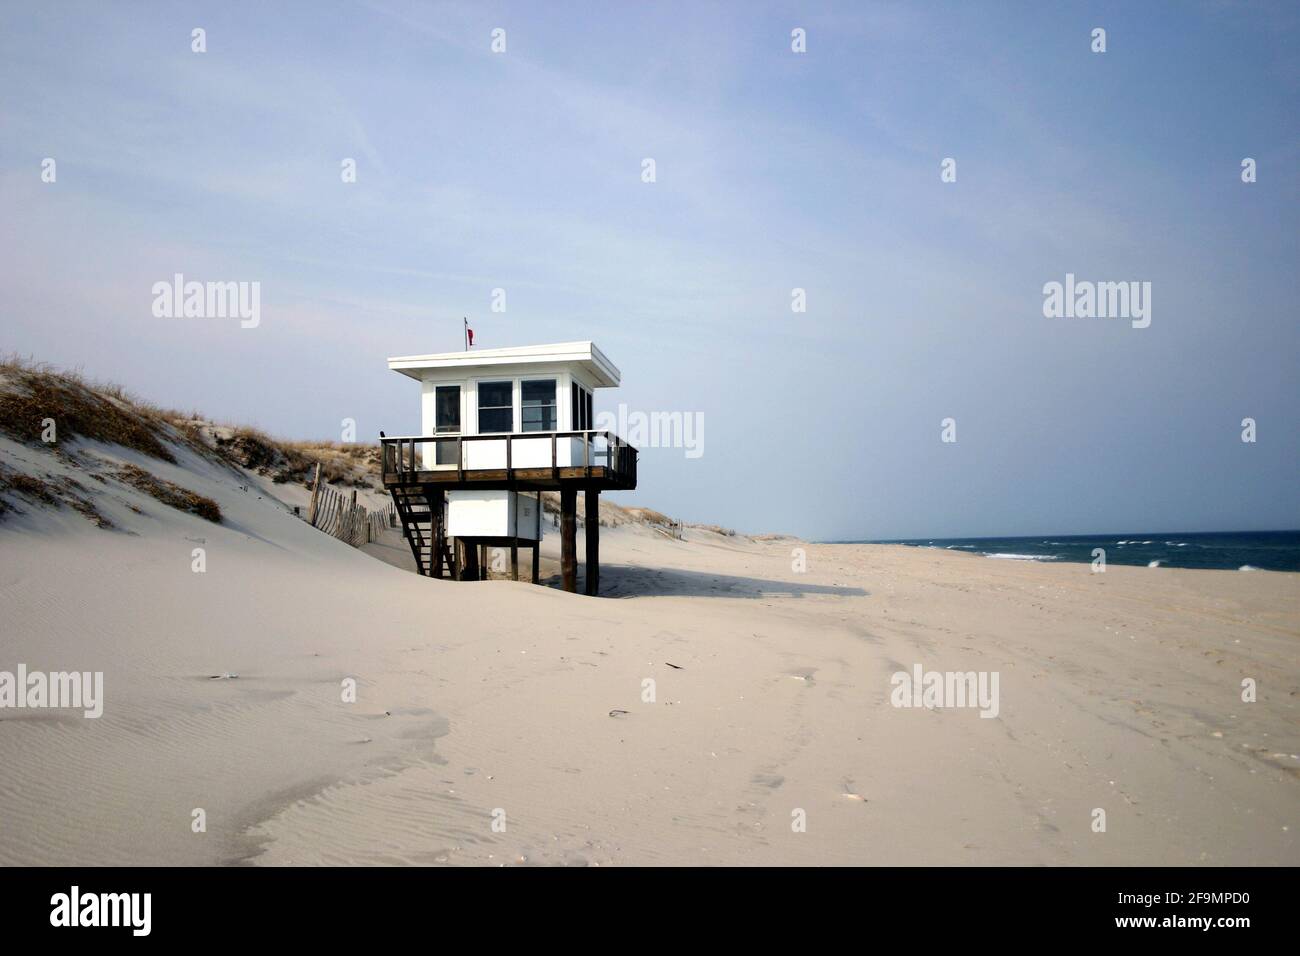 El verano está llegando, socorrista cobertizo está listo para miles de personas para visitar la costa de Nueva Jersey, Island Beach State Park, Estados Unidos Foto de stock